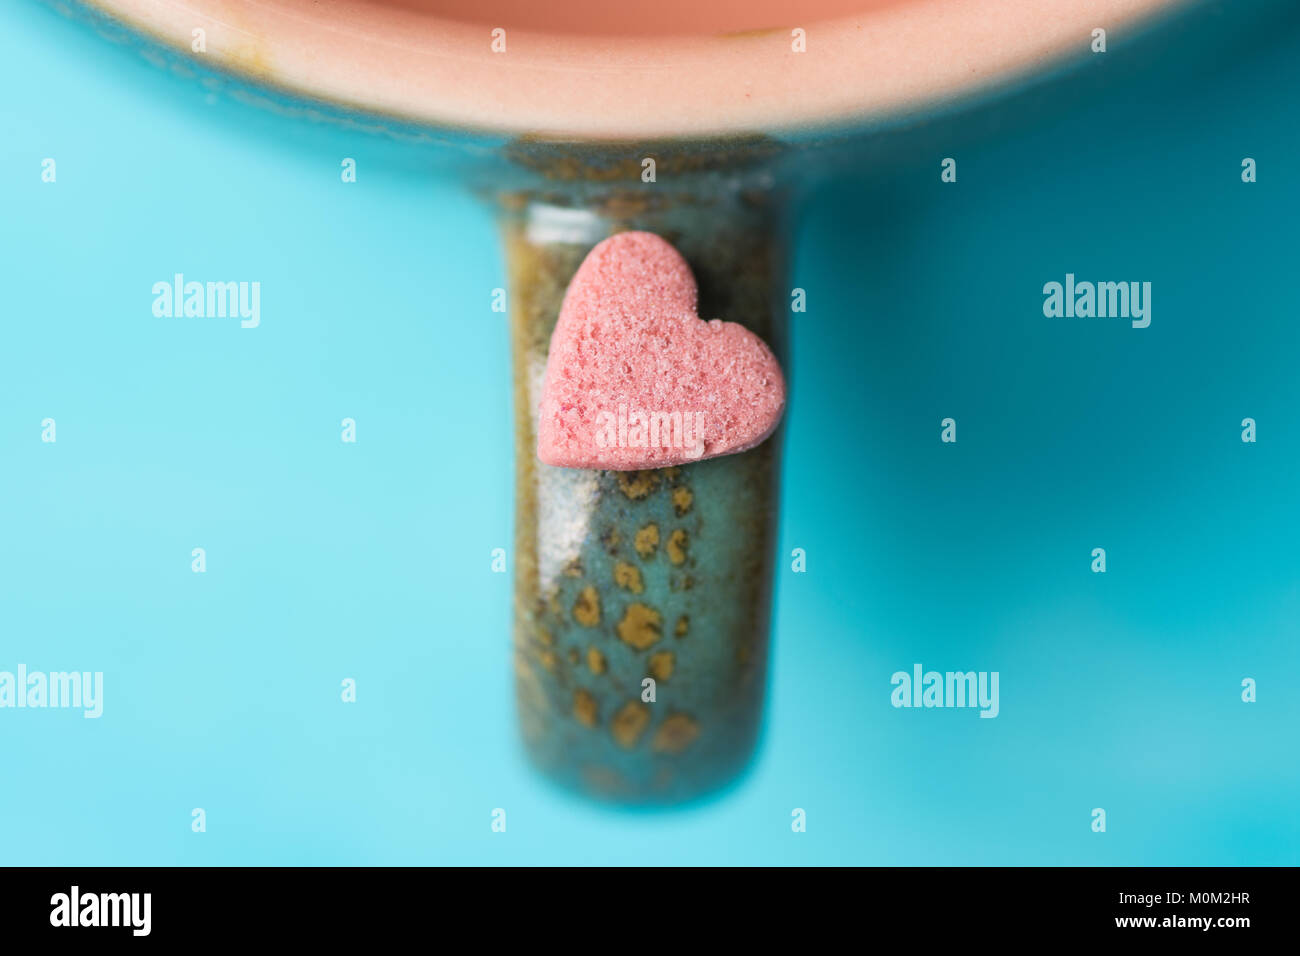 Kleine rosa Herzform Kandiszucker auf dem Griff von Kaffee Tasse Tee auf hellblauem Hintergrund. Valentinstag Muttertag Liebe Konzept. Grußkarte Post Stockfoto